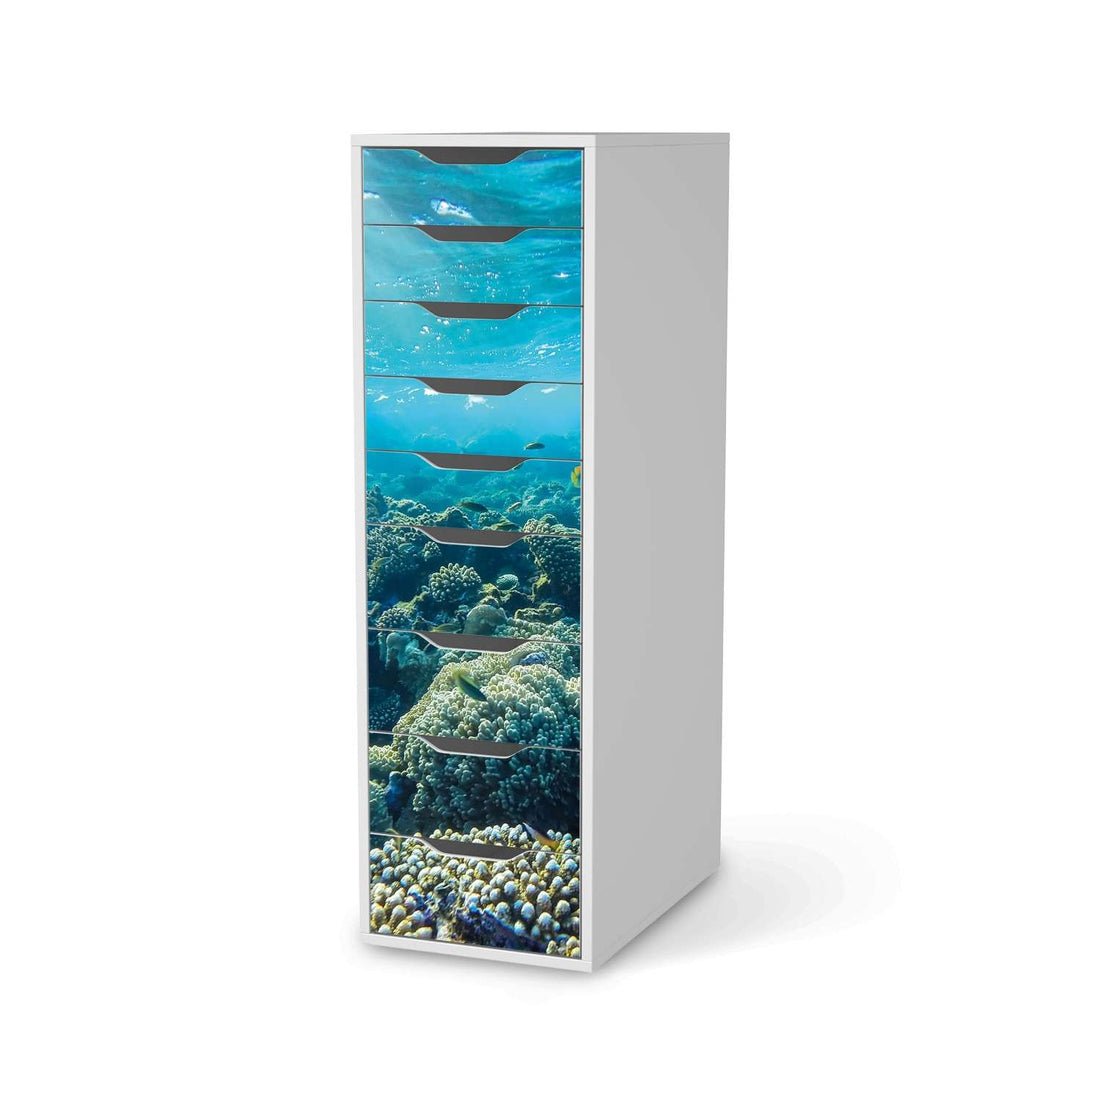 Folie für Möbel Underwater World - IKEA Alex 9 Schubladen - weiss